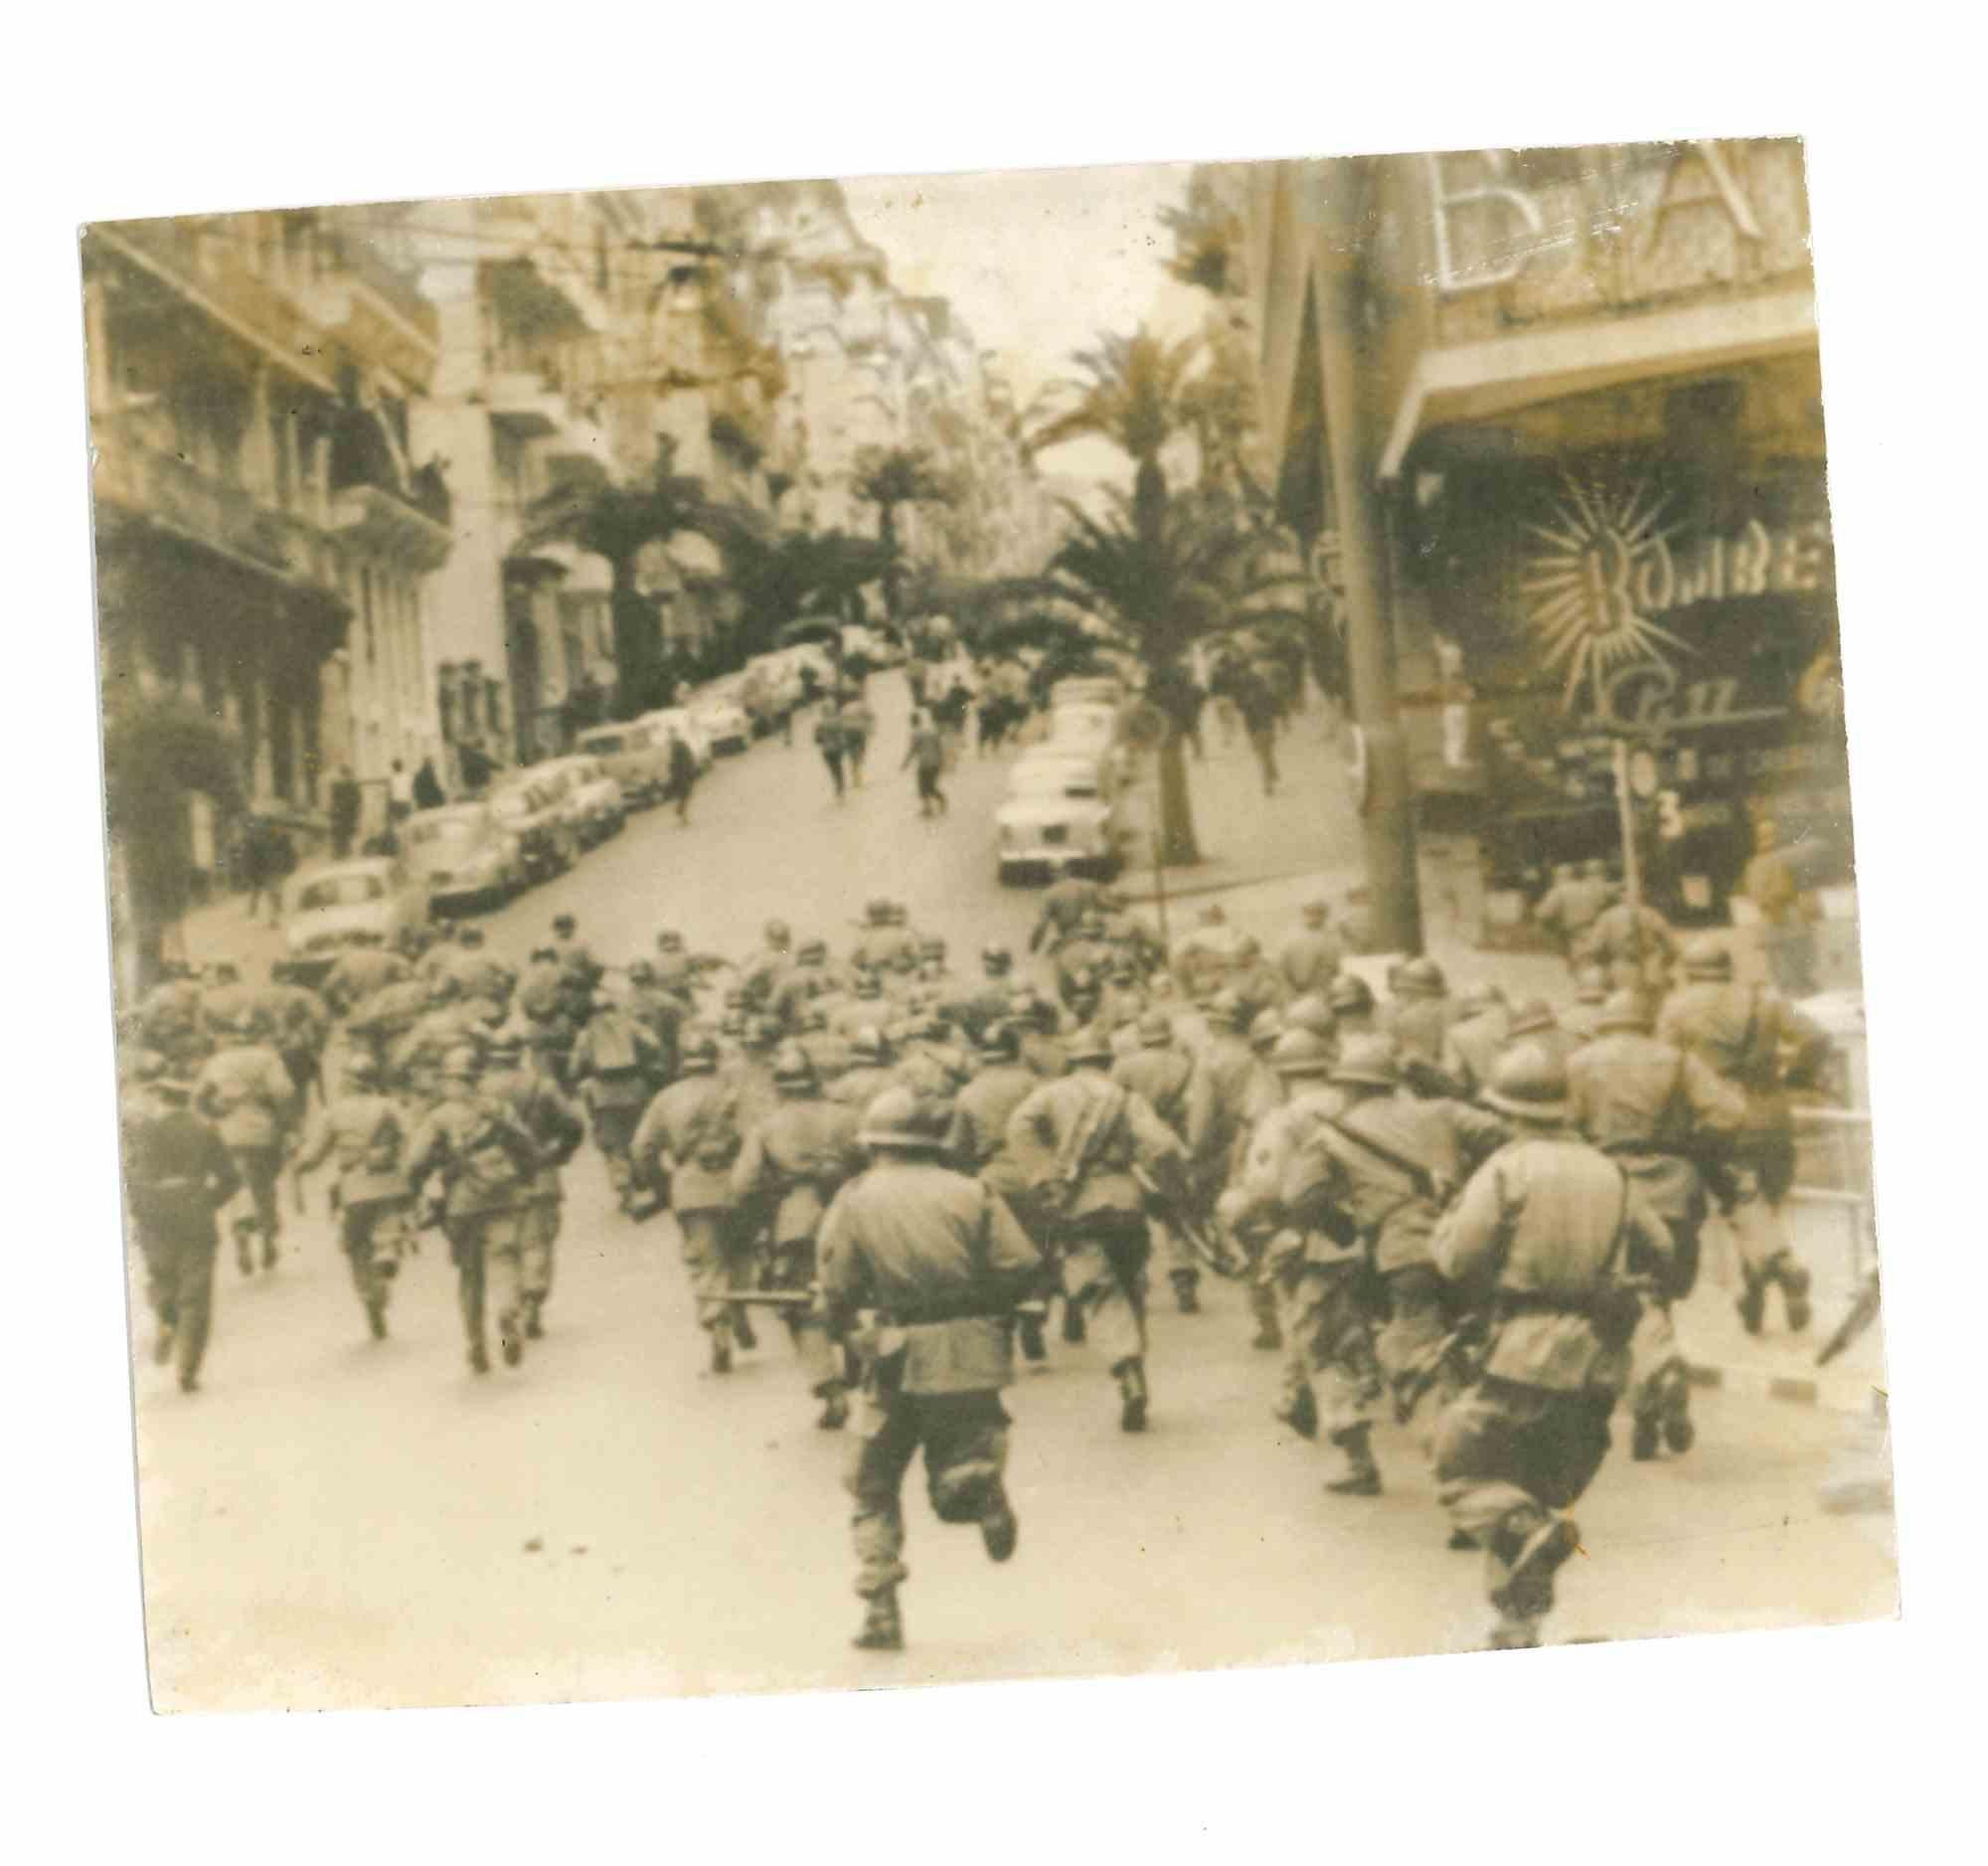 Des soldats d'Alger - Photo historique  - 1960s